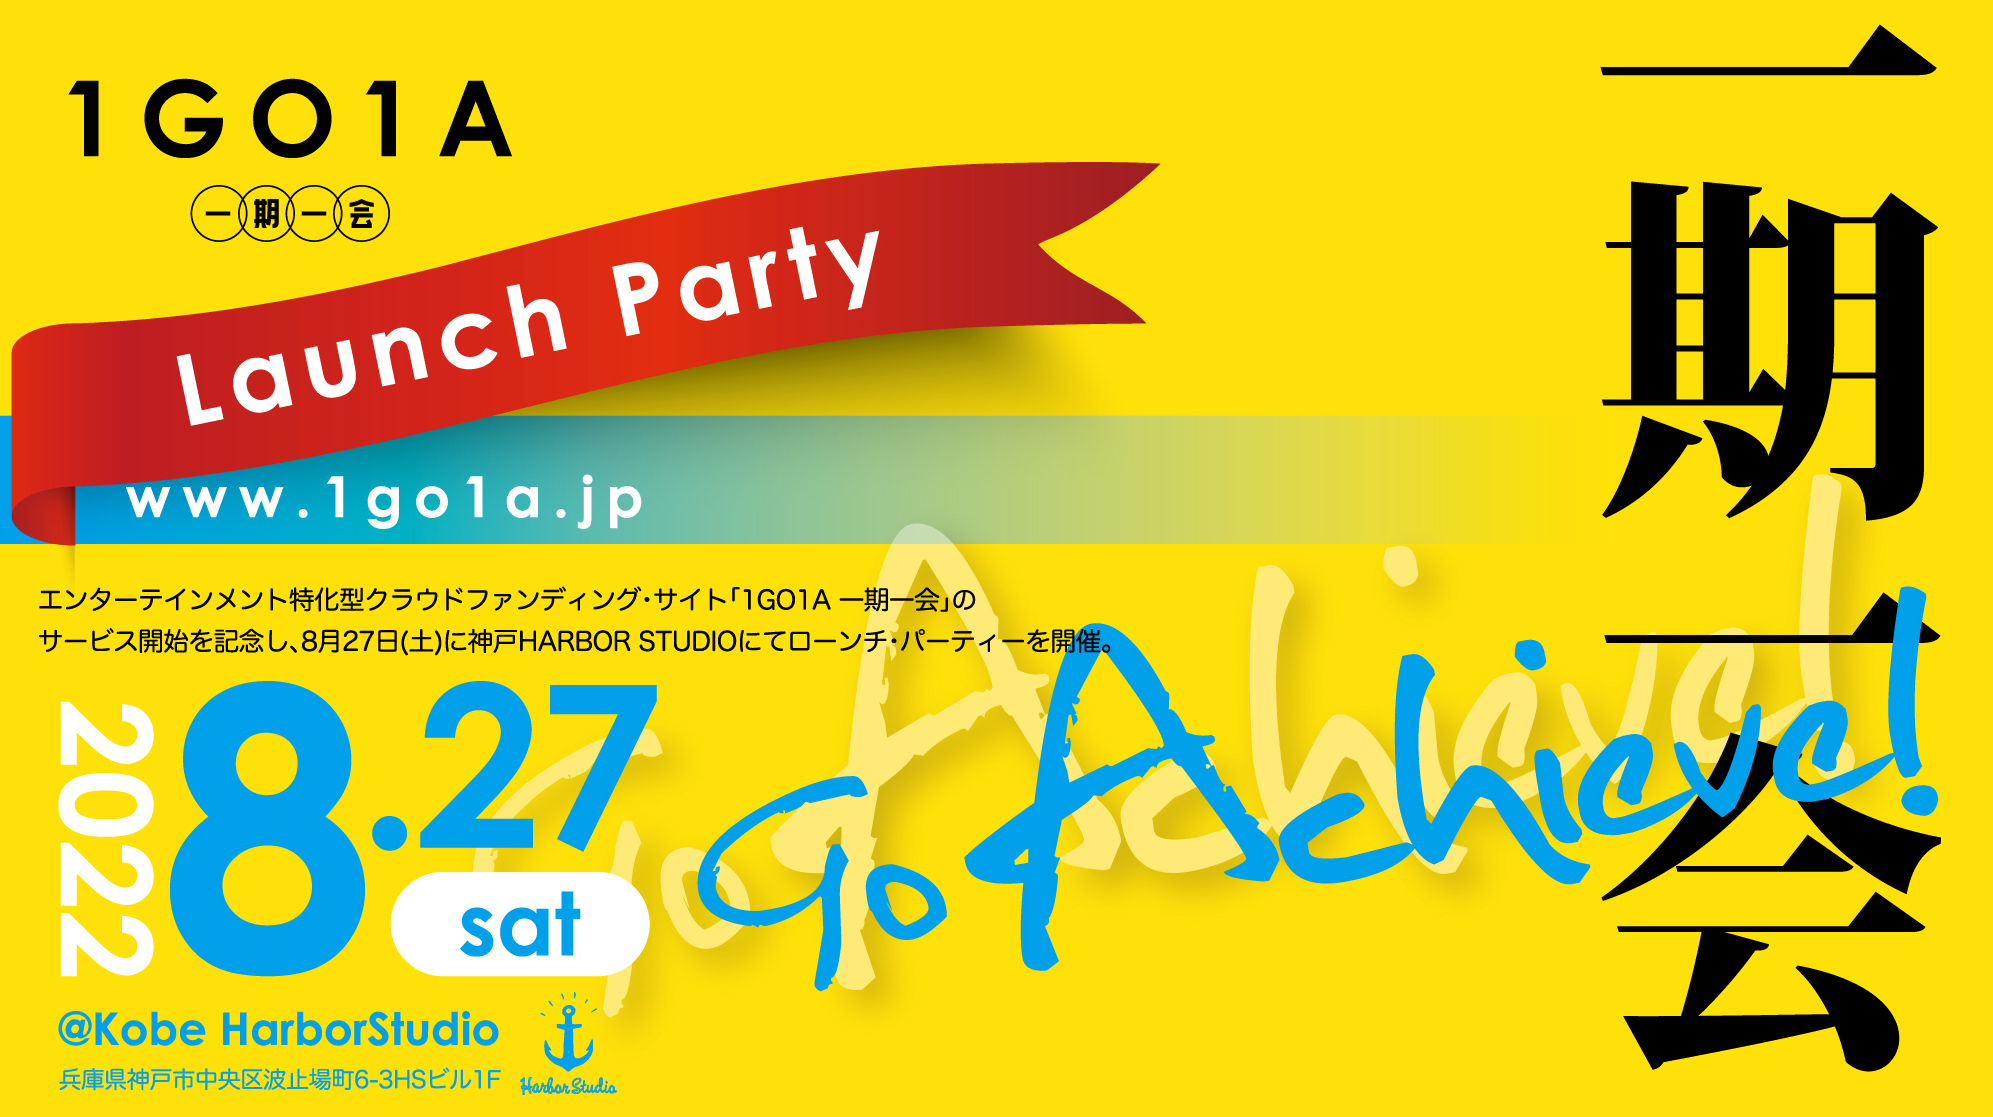 Go Achieve!　-1GO1A 一期一会 Launch Party -